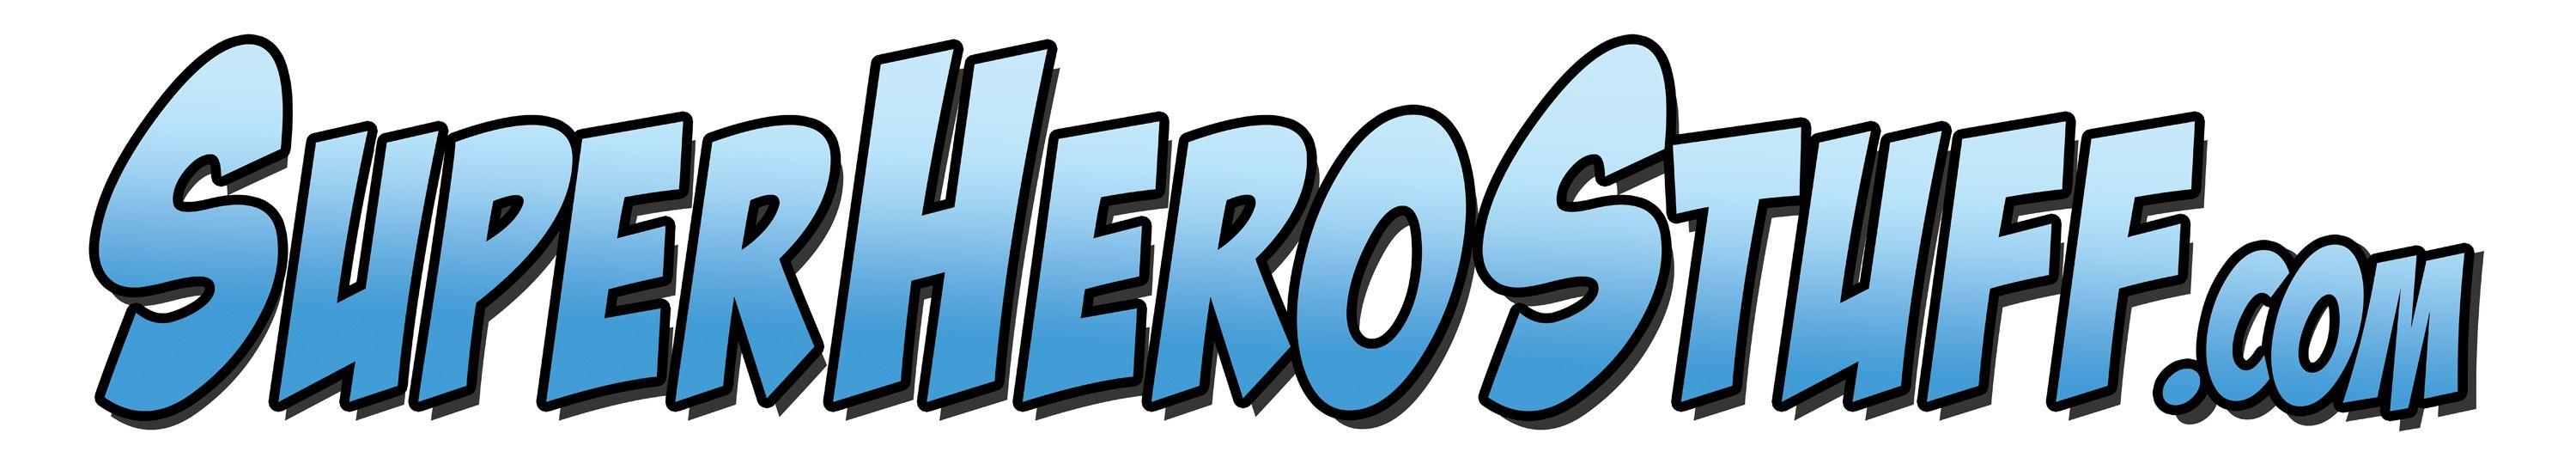 Superherostuff.com Logo - Monster Lists! Jarred Gives Us His Best Websites and TV Shows For ...